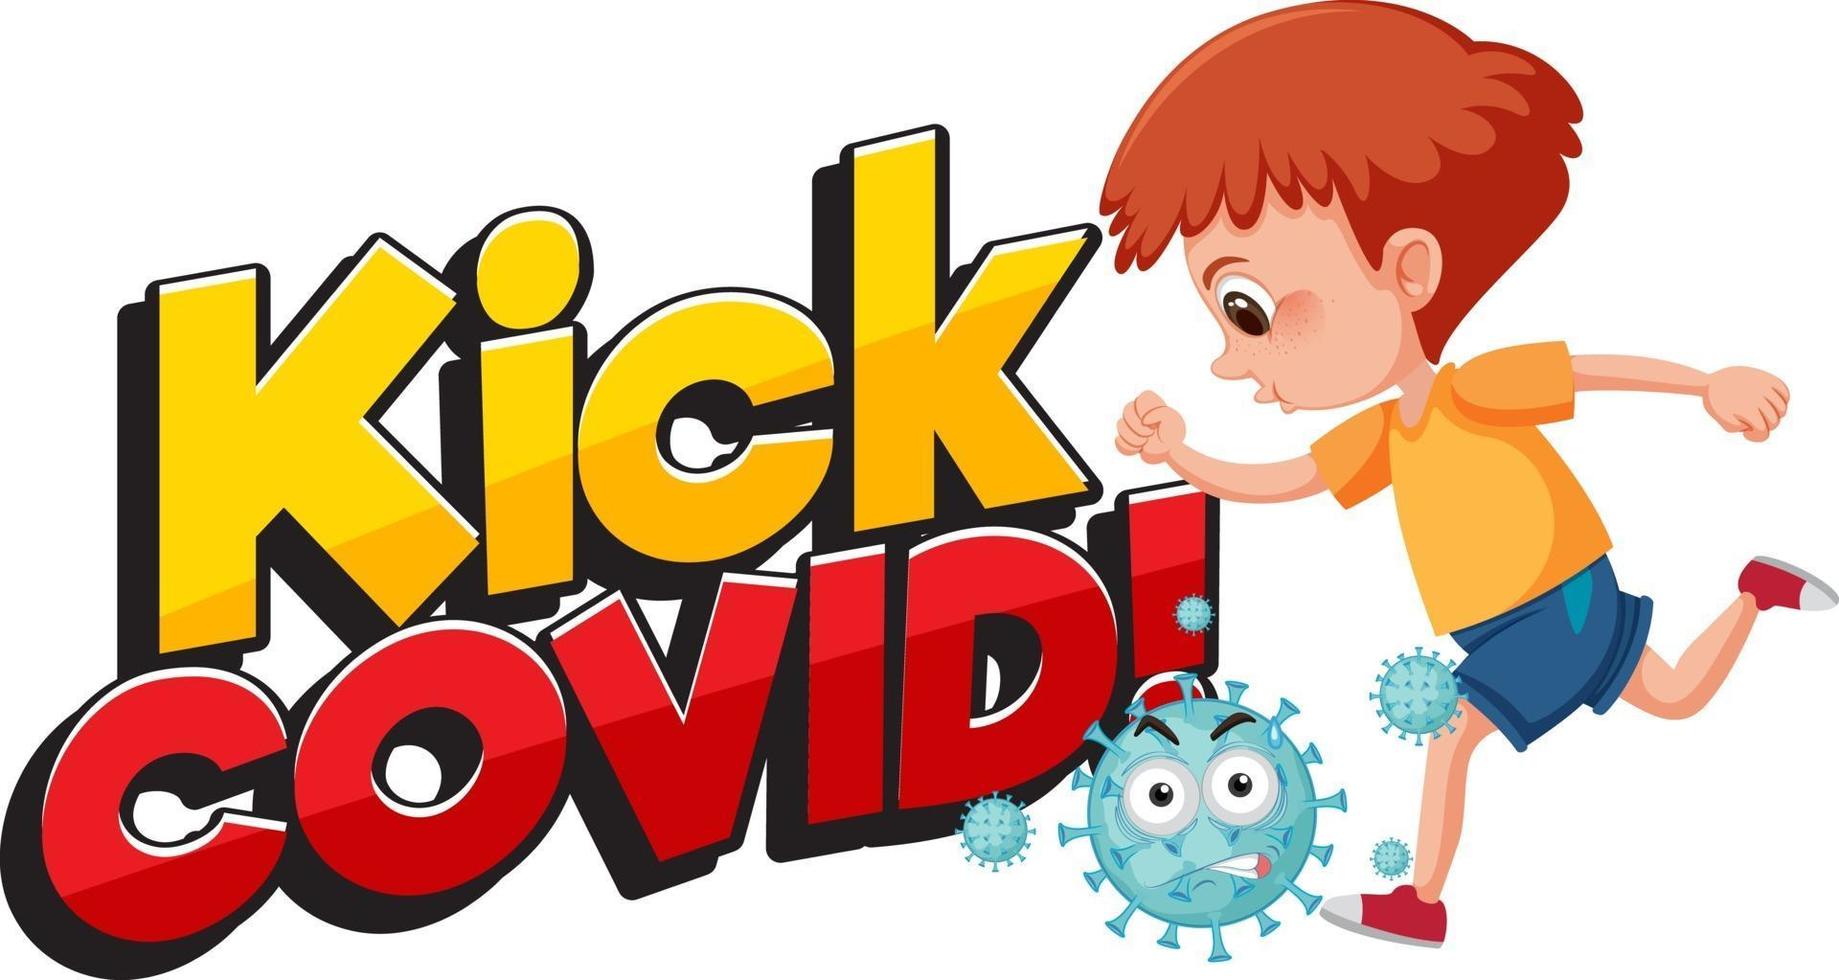 Kick Covid font with a boy trying to kick coronavirus cartoon character vector